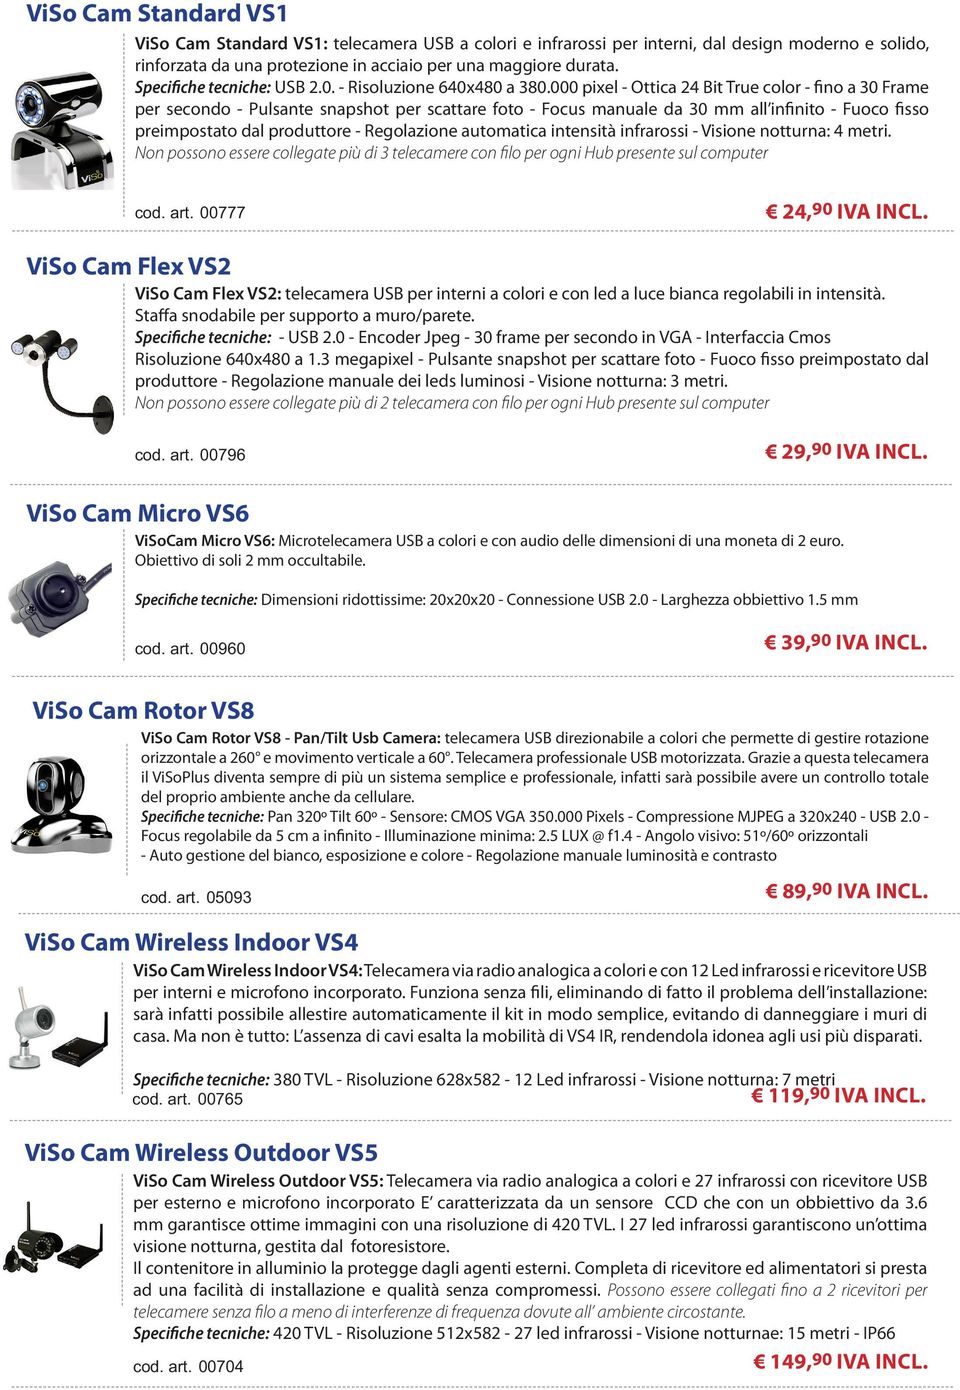 ViSo Cam Fle VS2 ViSo Cam Fle VS2: Specifiche tecniche: Non possono essere collegate più di 2 telecamera con filo per ogni Hub presente sul computer cod. art. 00796 29,90 IVA INCL.